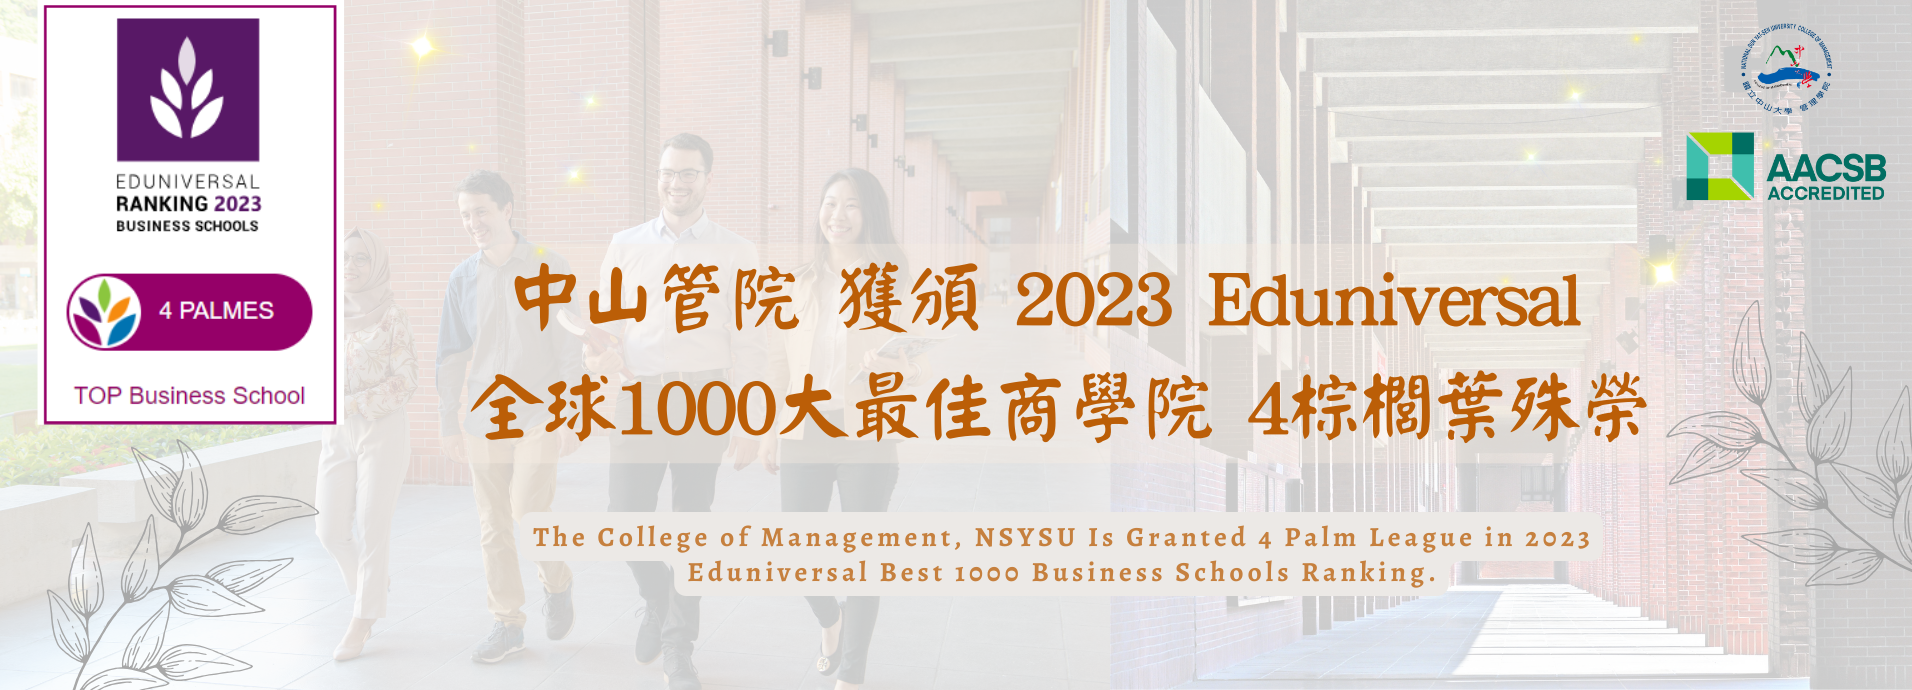 國立中山大學管理學院獲頒2023Eduniversal 全球1000大最佳商學院4棕櫚葉